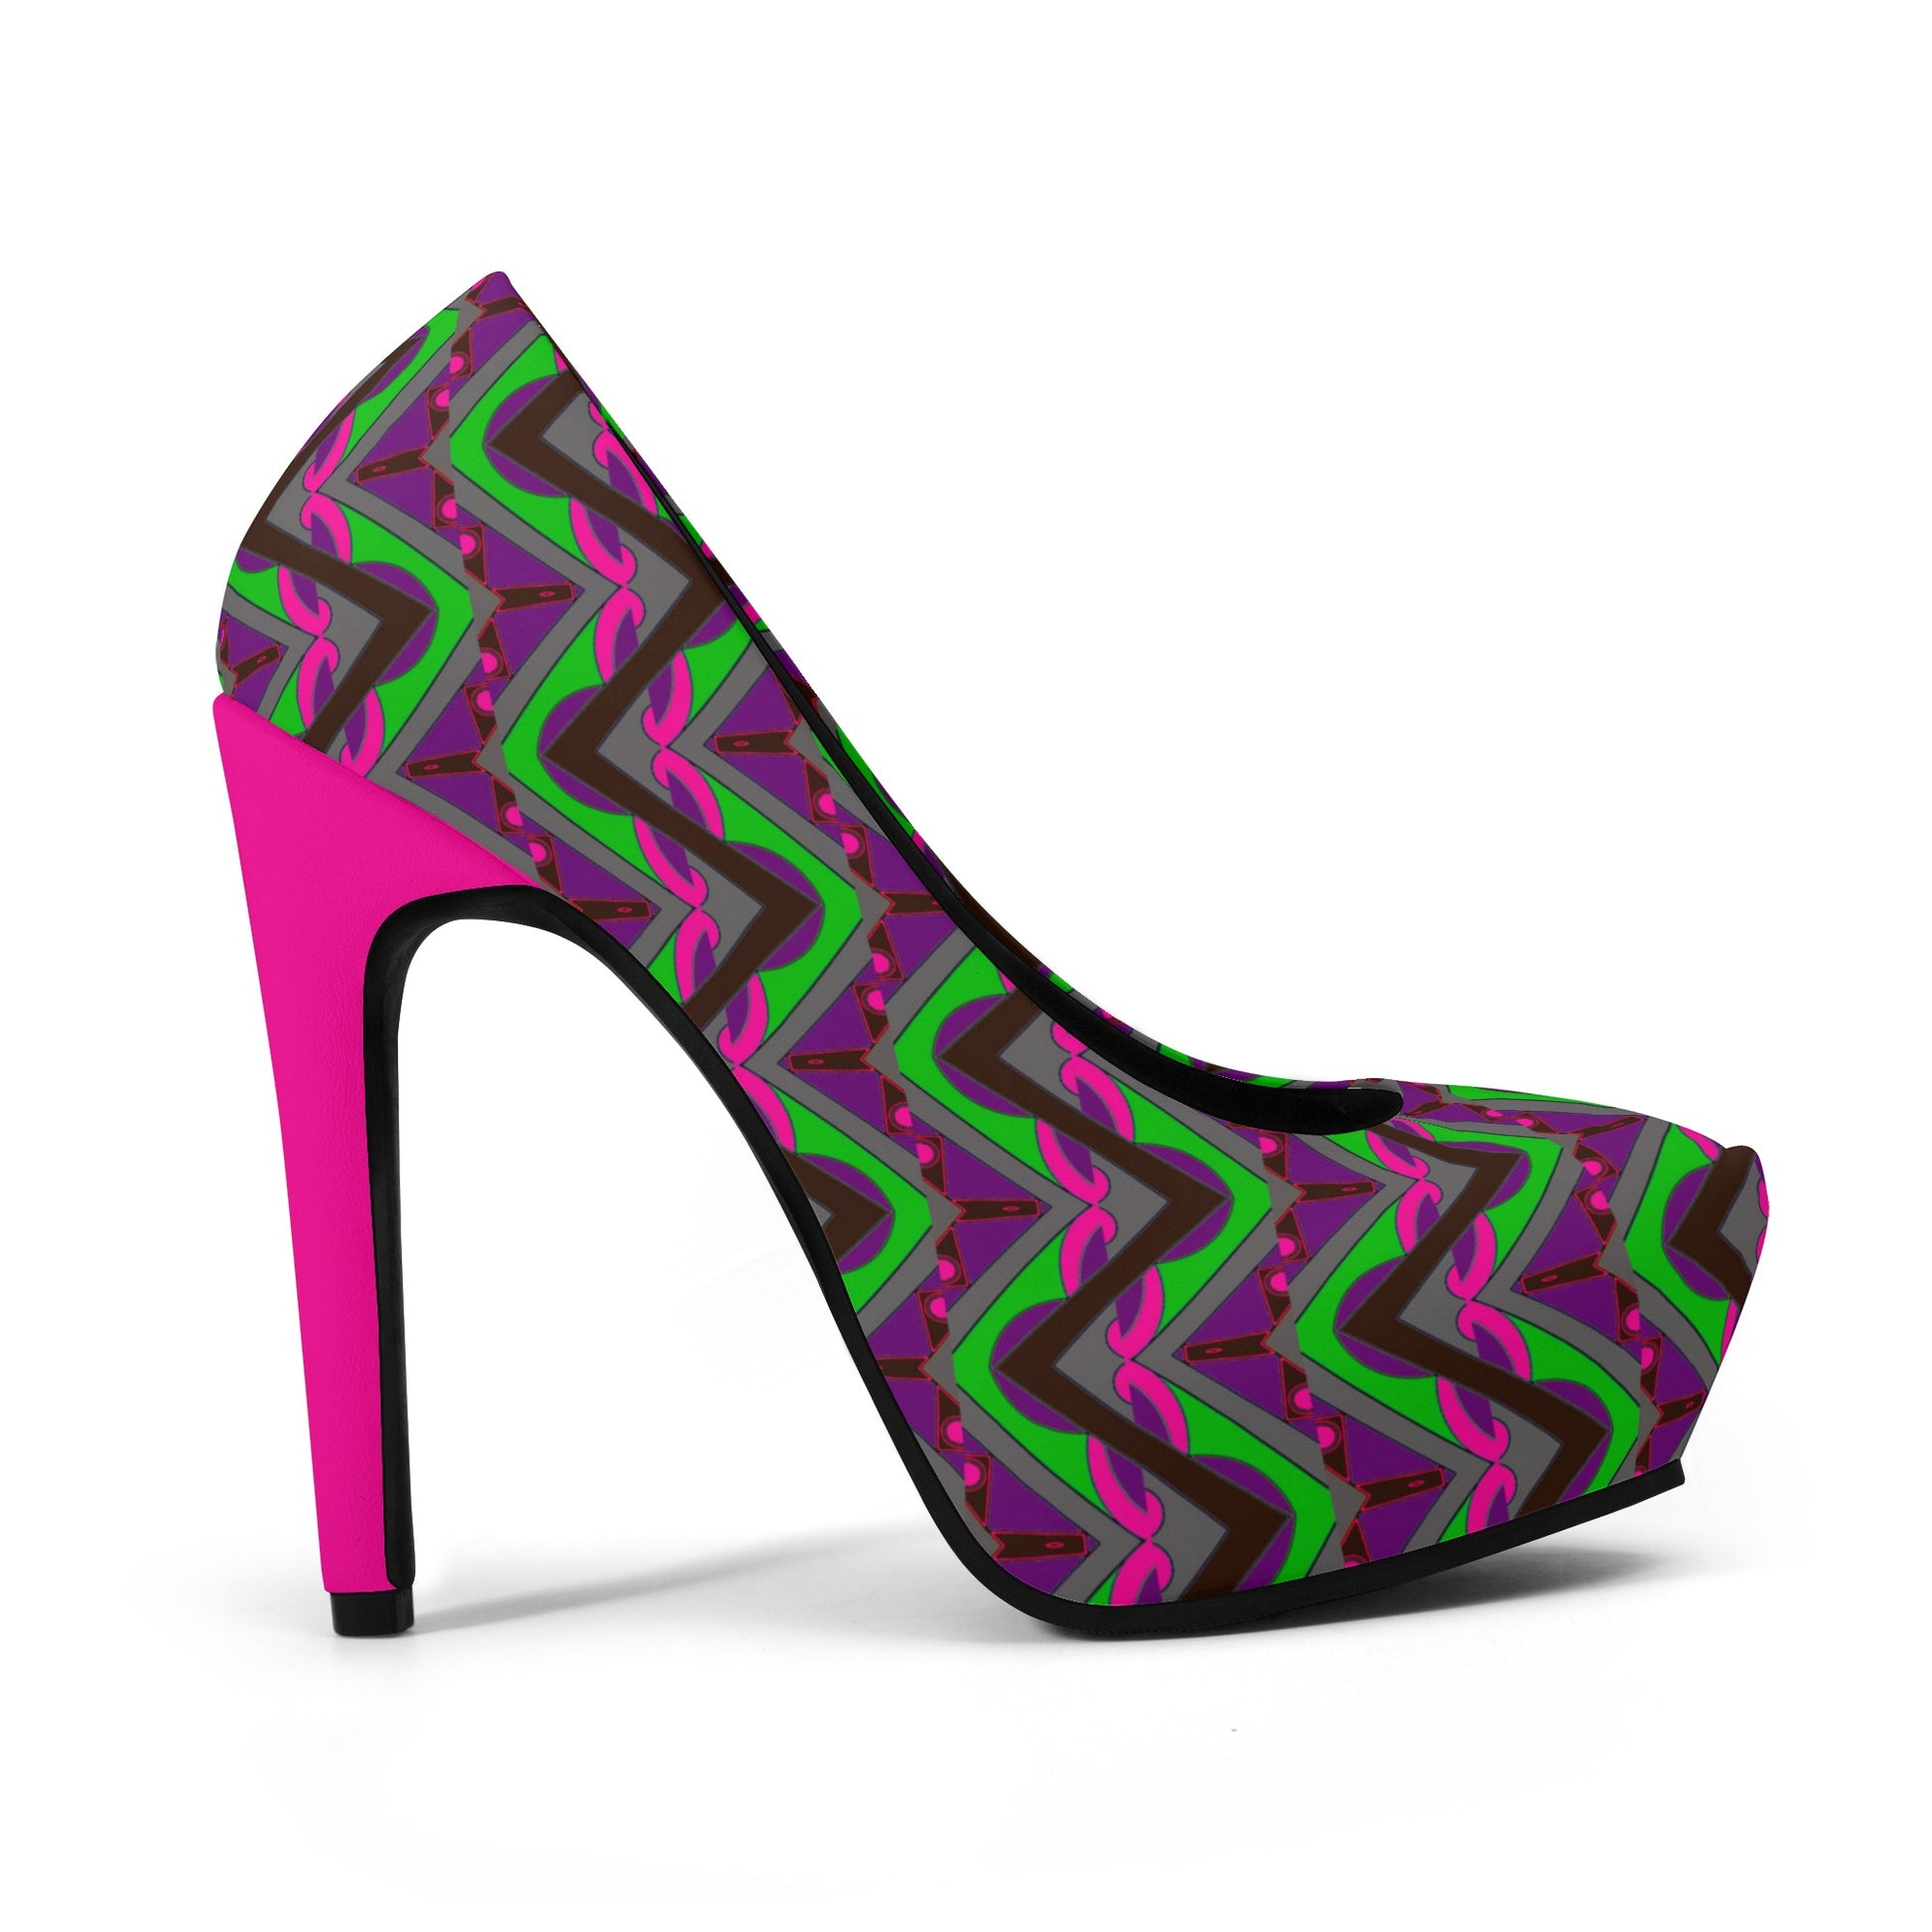 Maze Women Platform Pumps 5 Inch High Heels - women's shoes at TFC&H Co.